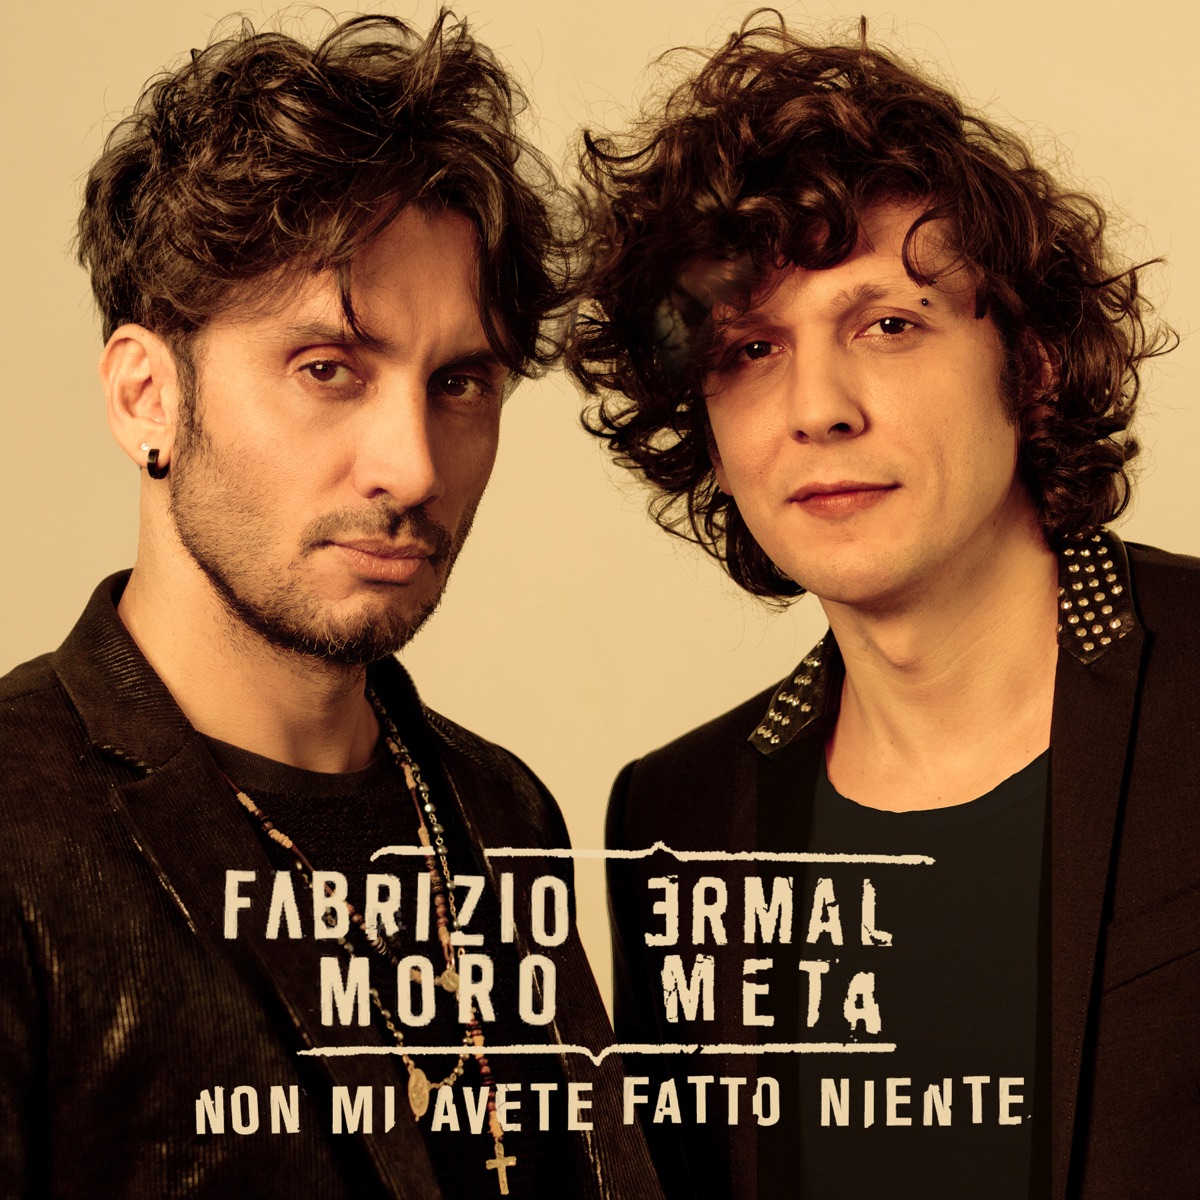 Non mi avete fatto niente - Single by Ermal Meta & Fabrizio Moro on Apple  Music